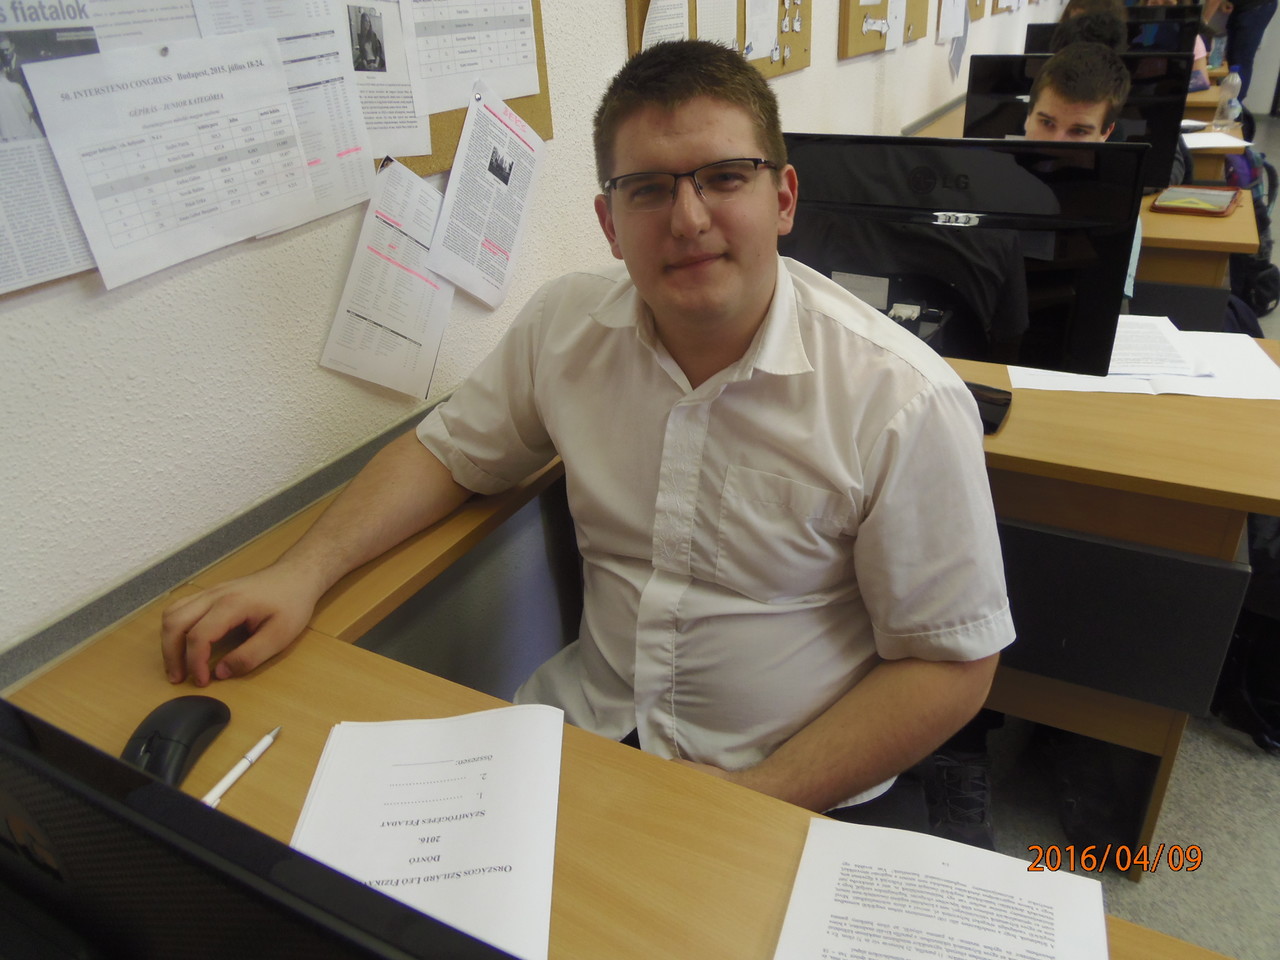 Papp Zoltán az ESZI tanulója a döntő kísérleti feladat megodása közben